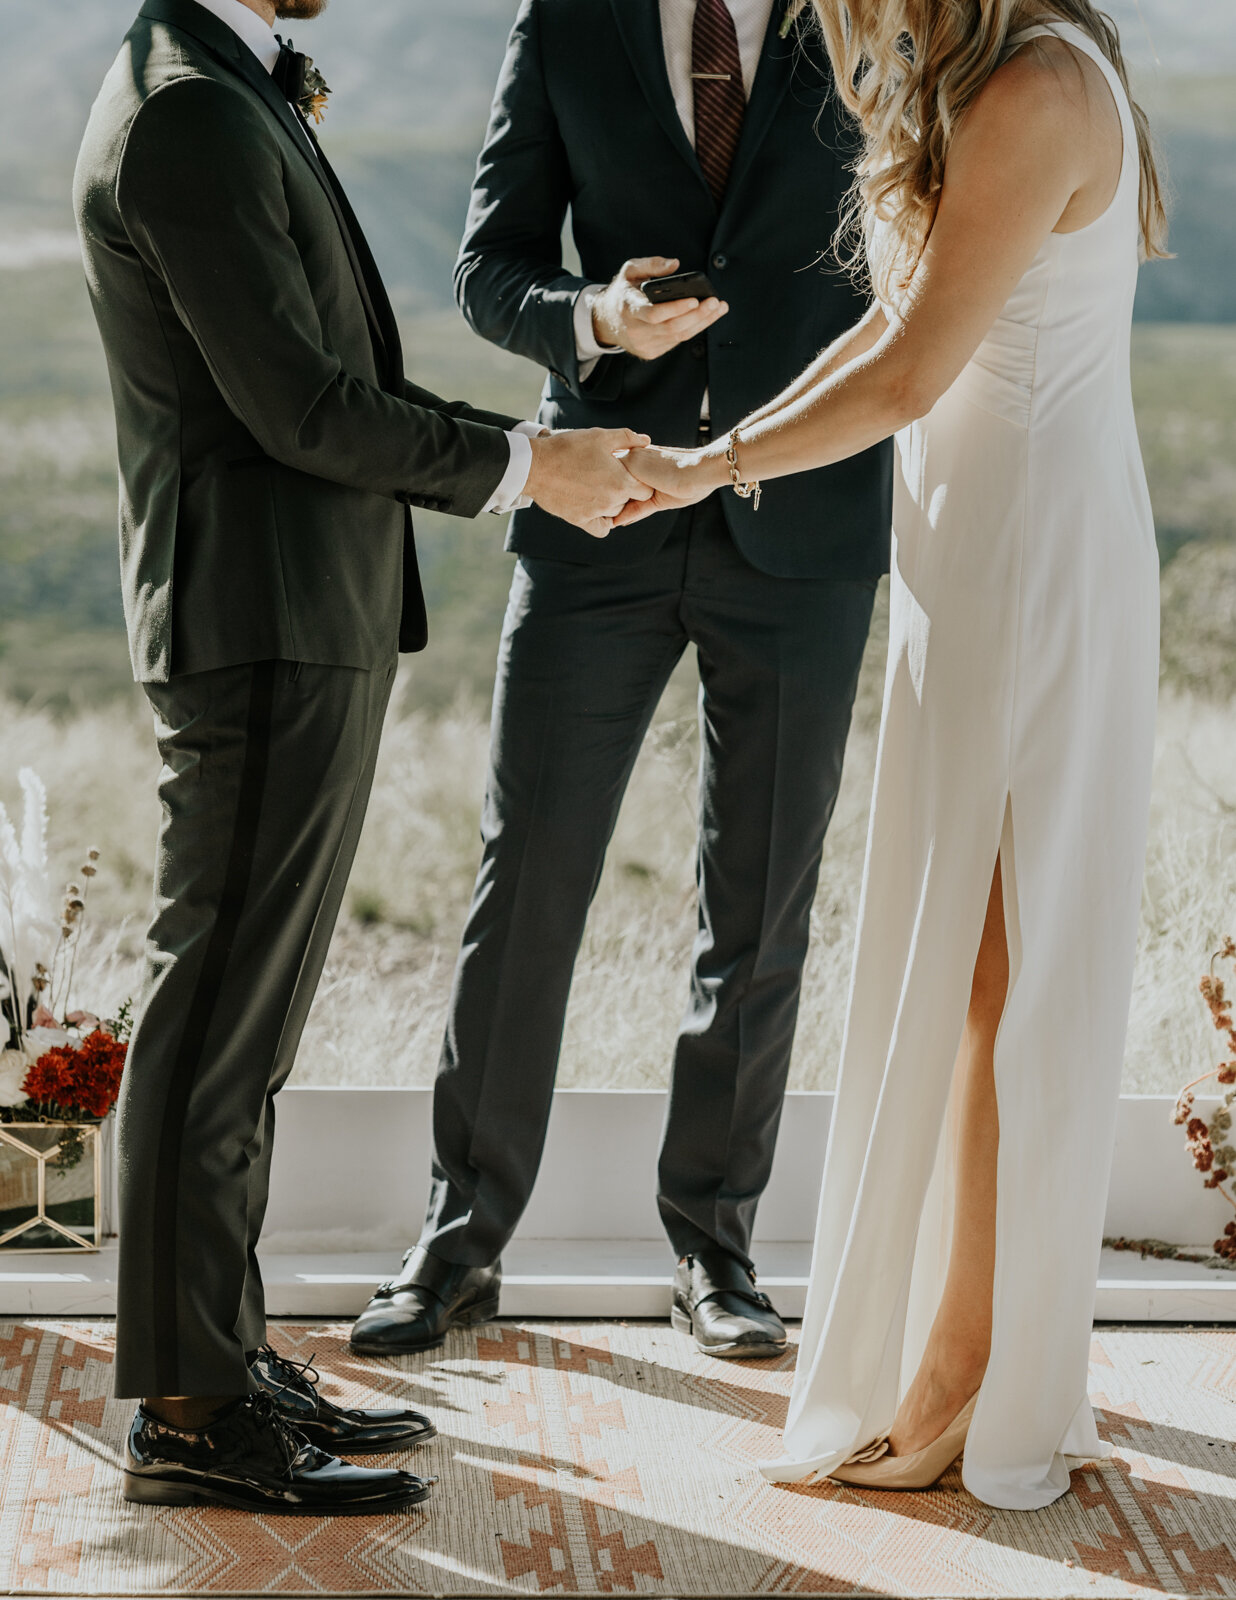 West Texas Intimate Wedding Ceremony